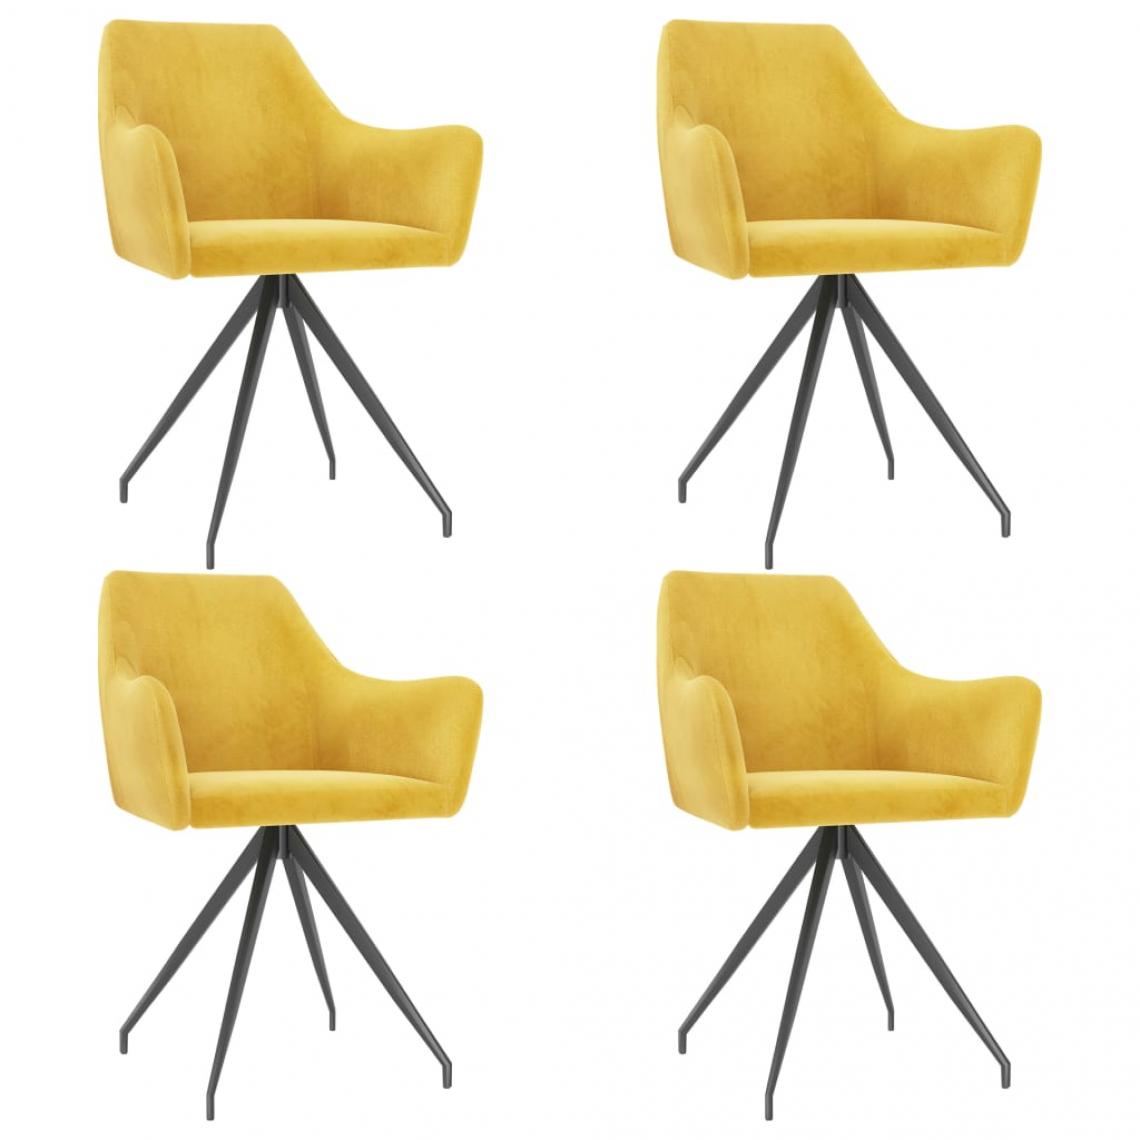 Decoshop26 - Lot de 4 chaises de salle à manger cuisine design moderne velours jaune CDS021662 - Chaises